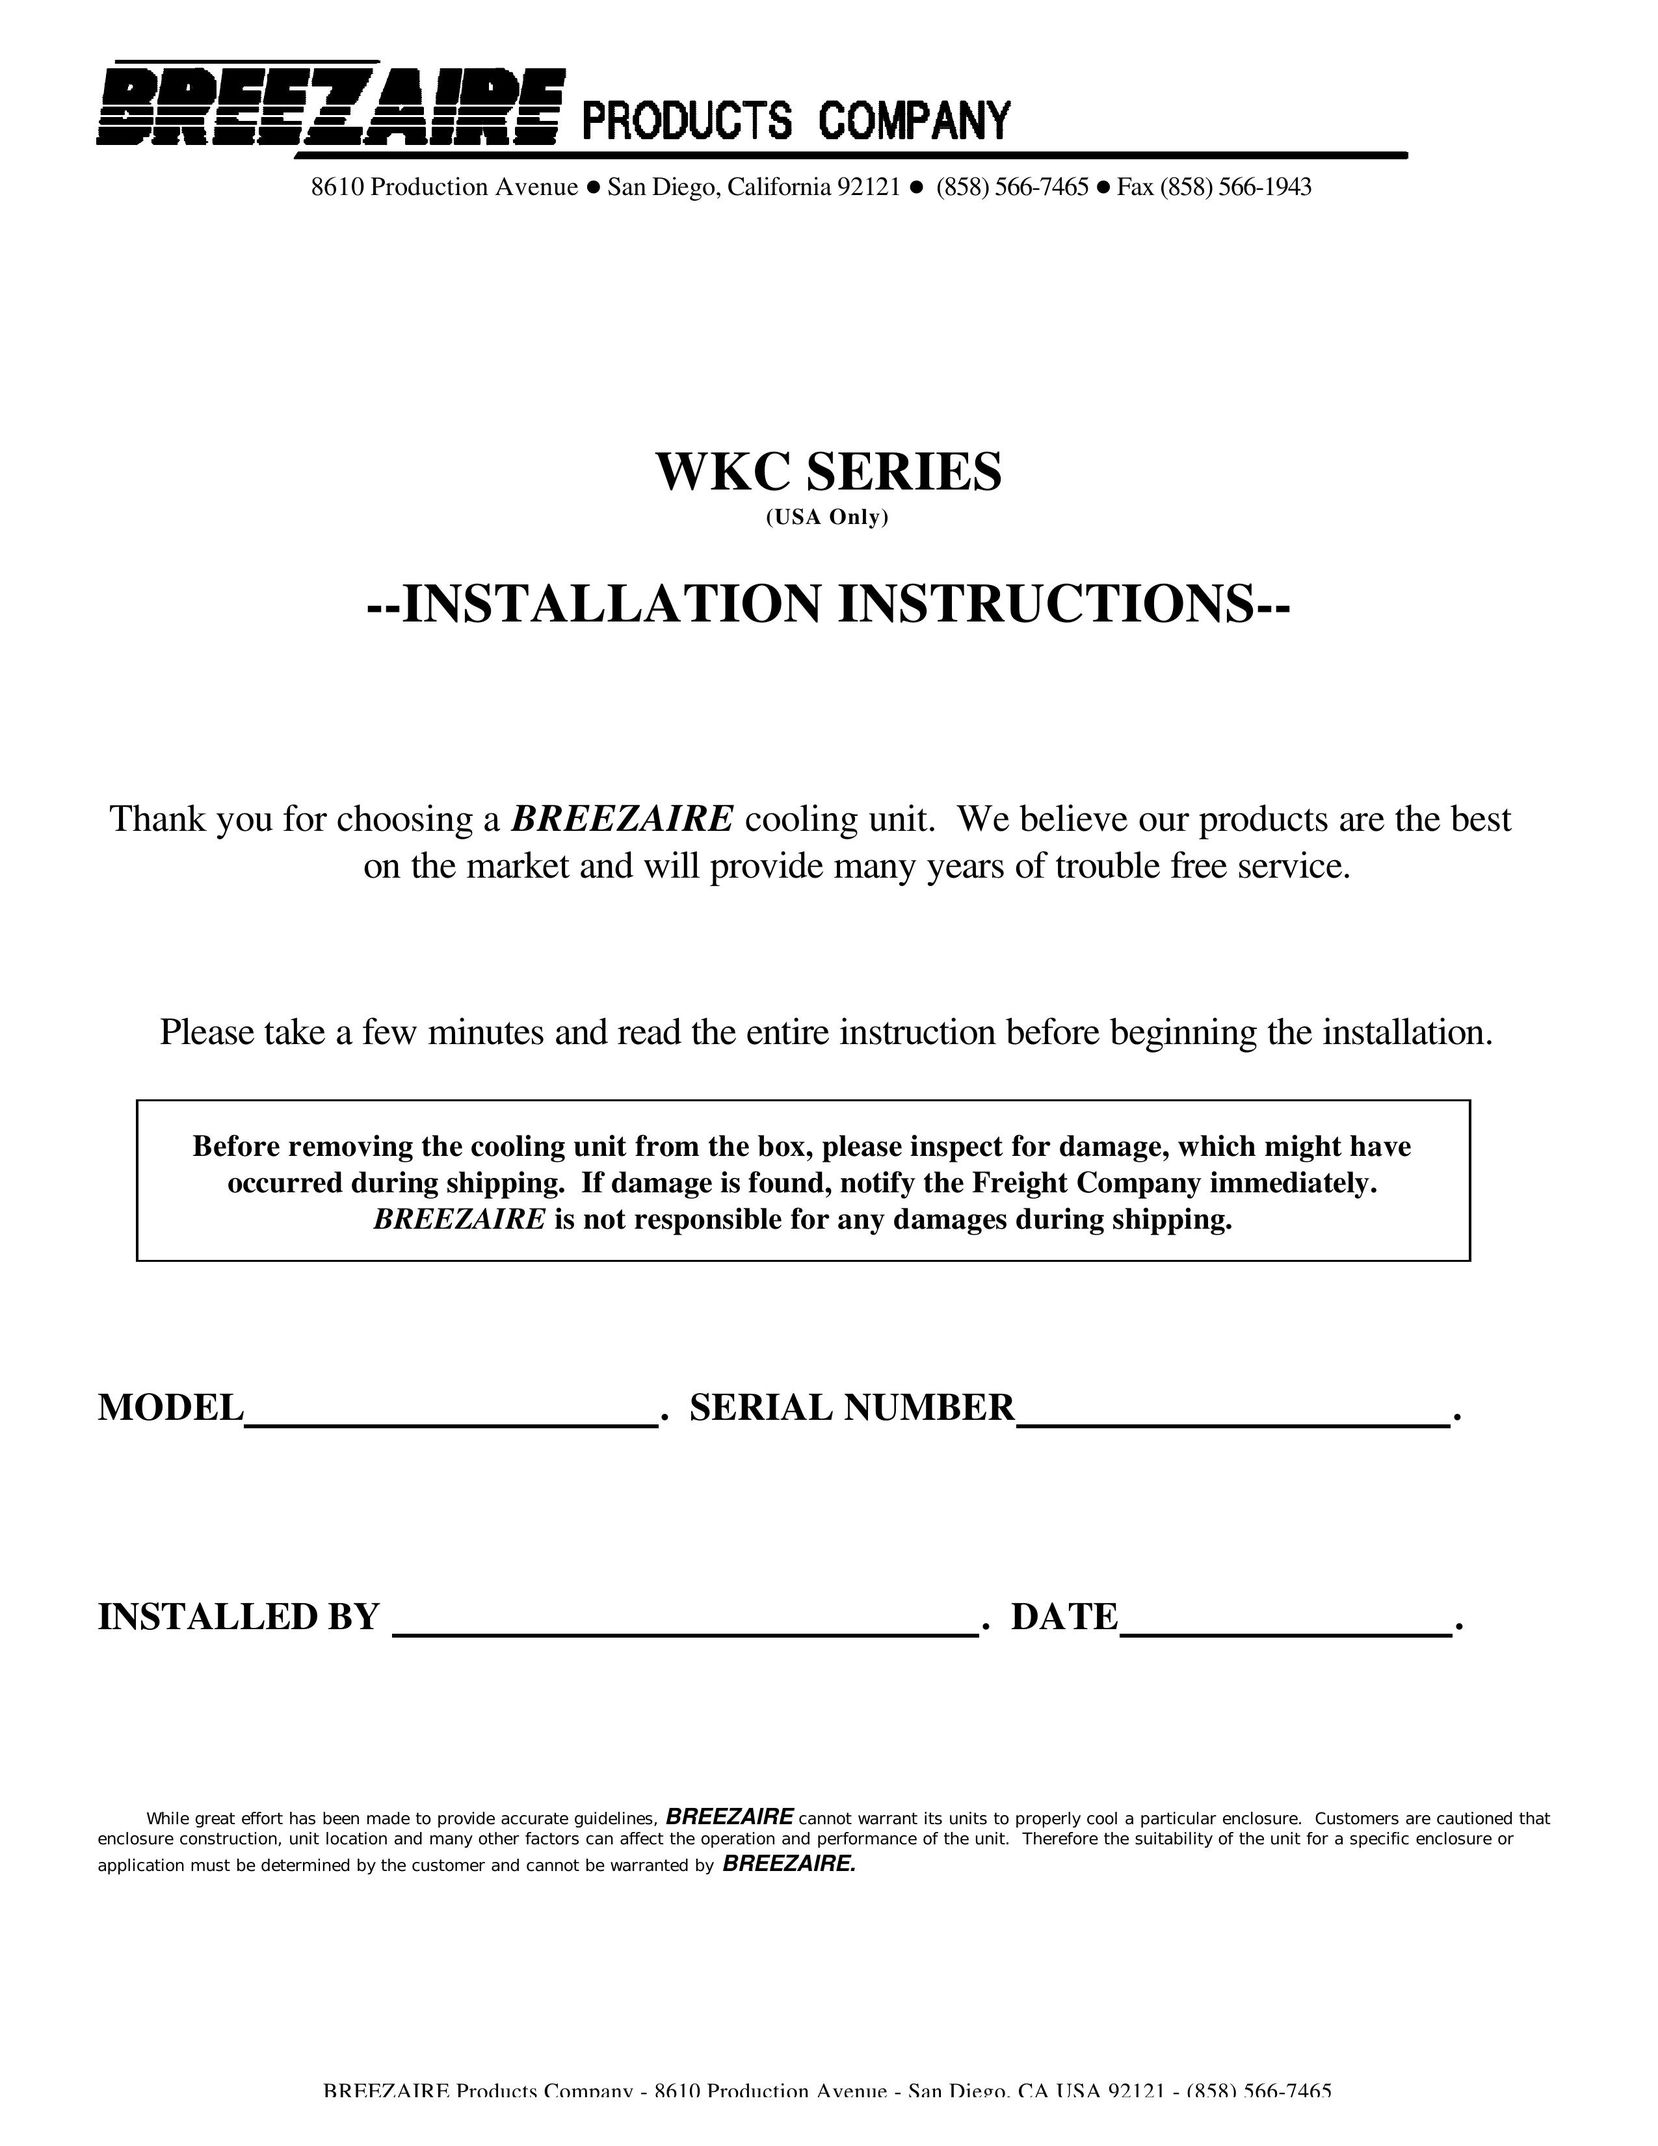 Breezaire WKC Series Fan User Manual